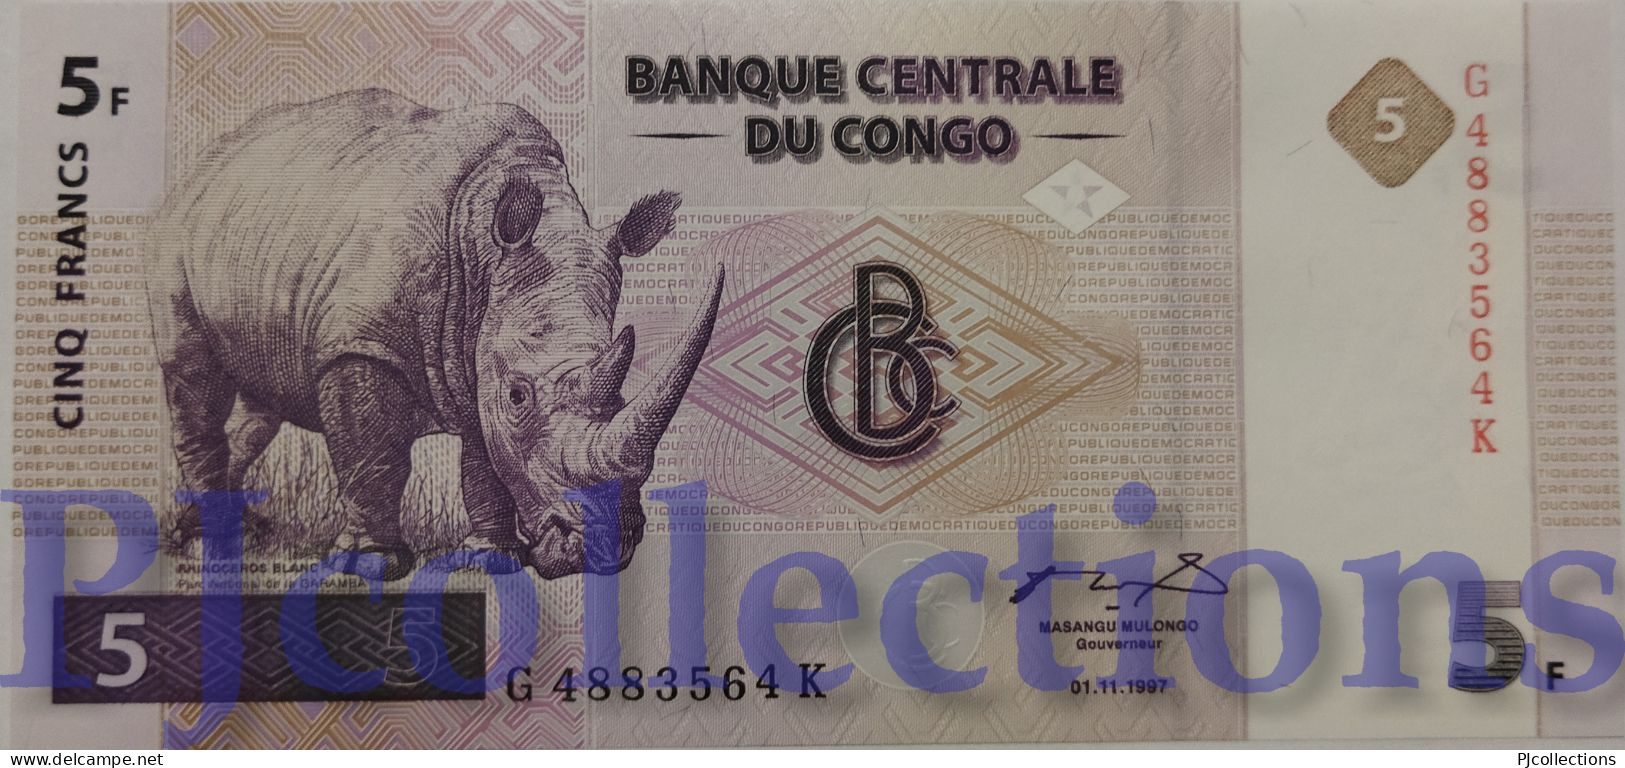 CONGO DEMOCRATIC REPUBLIC 5 FRANCS 1997 PICK 86A UNC - Comores